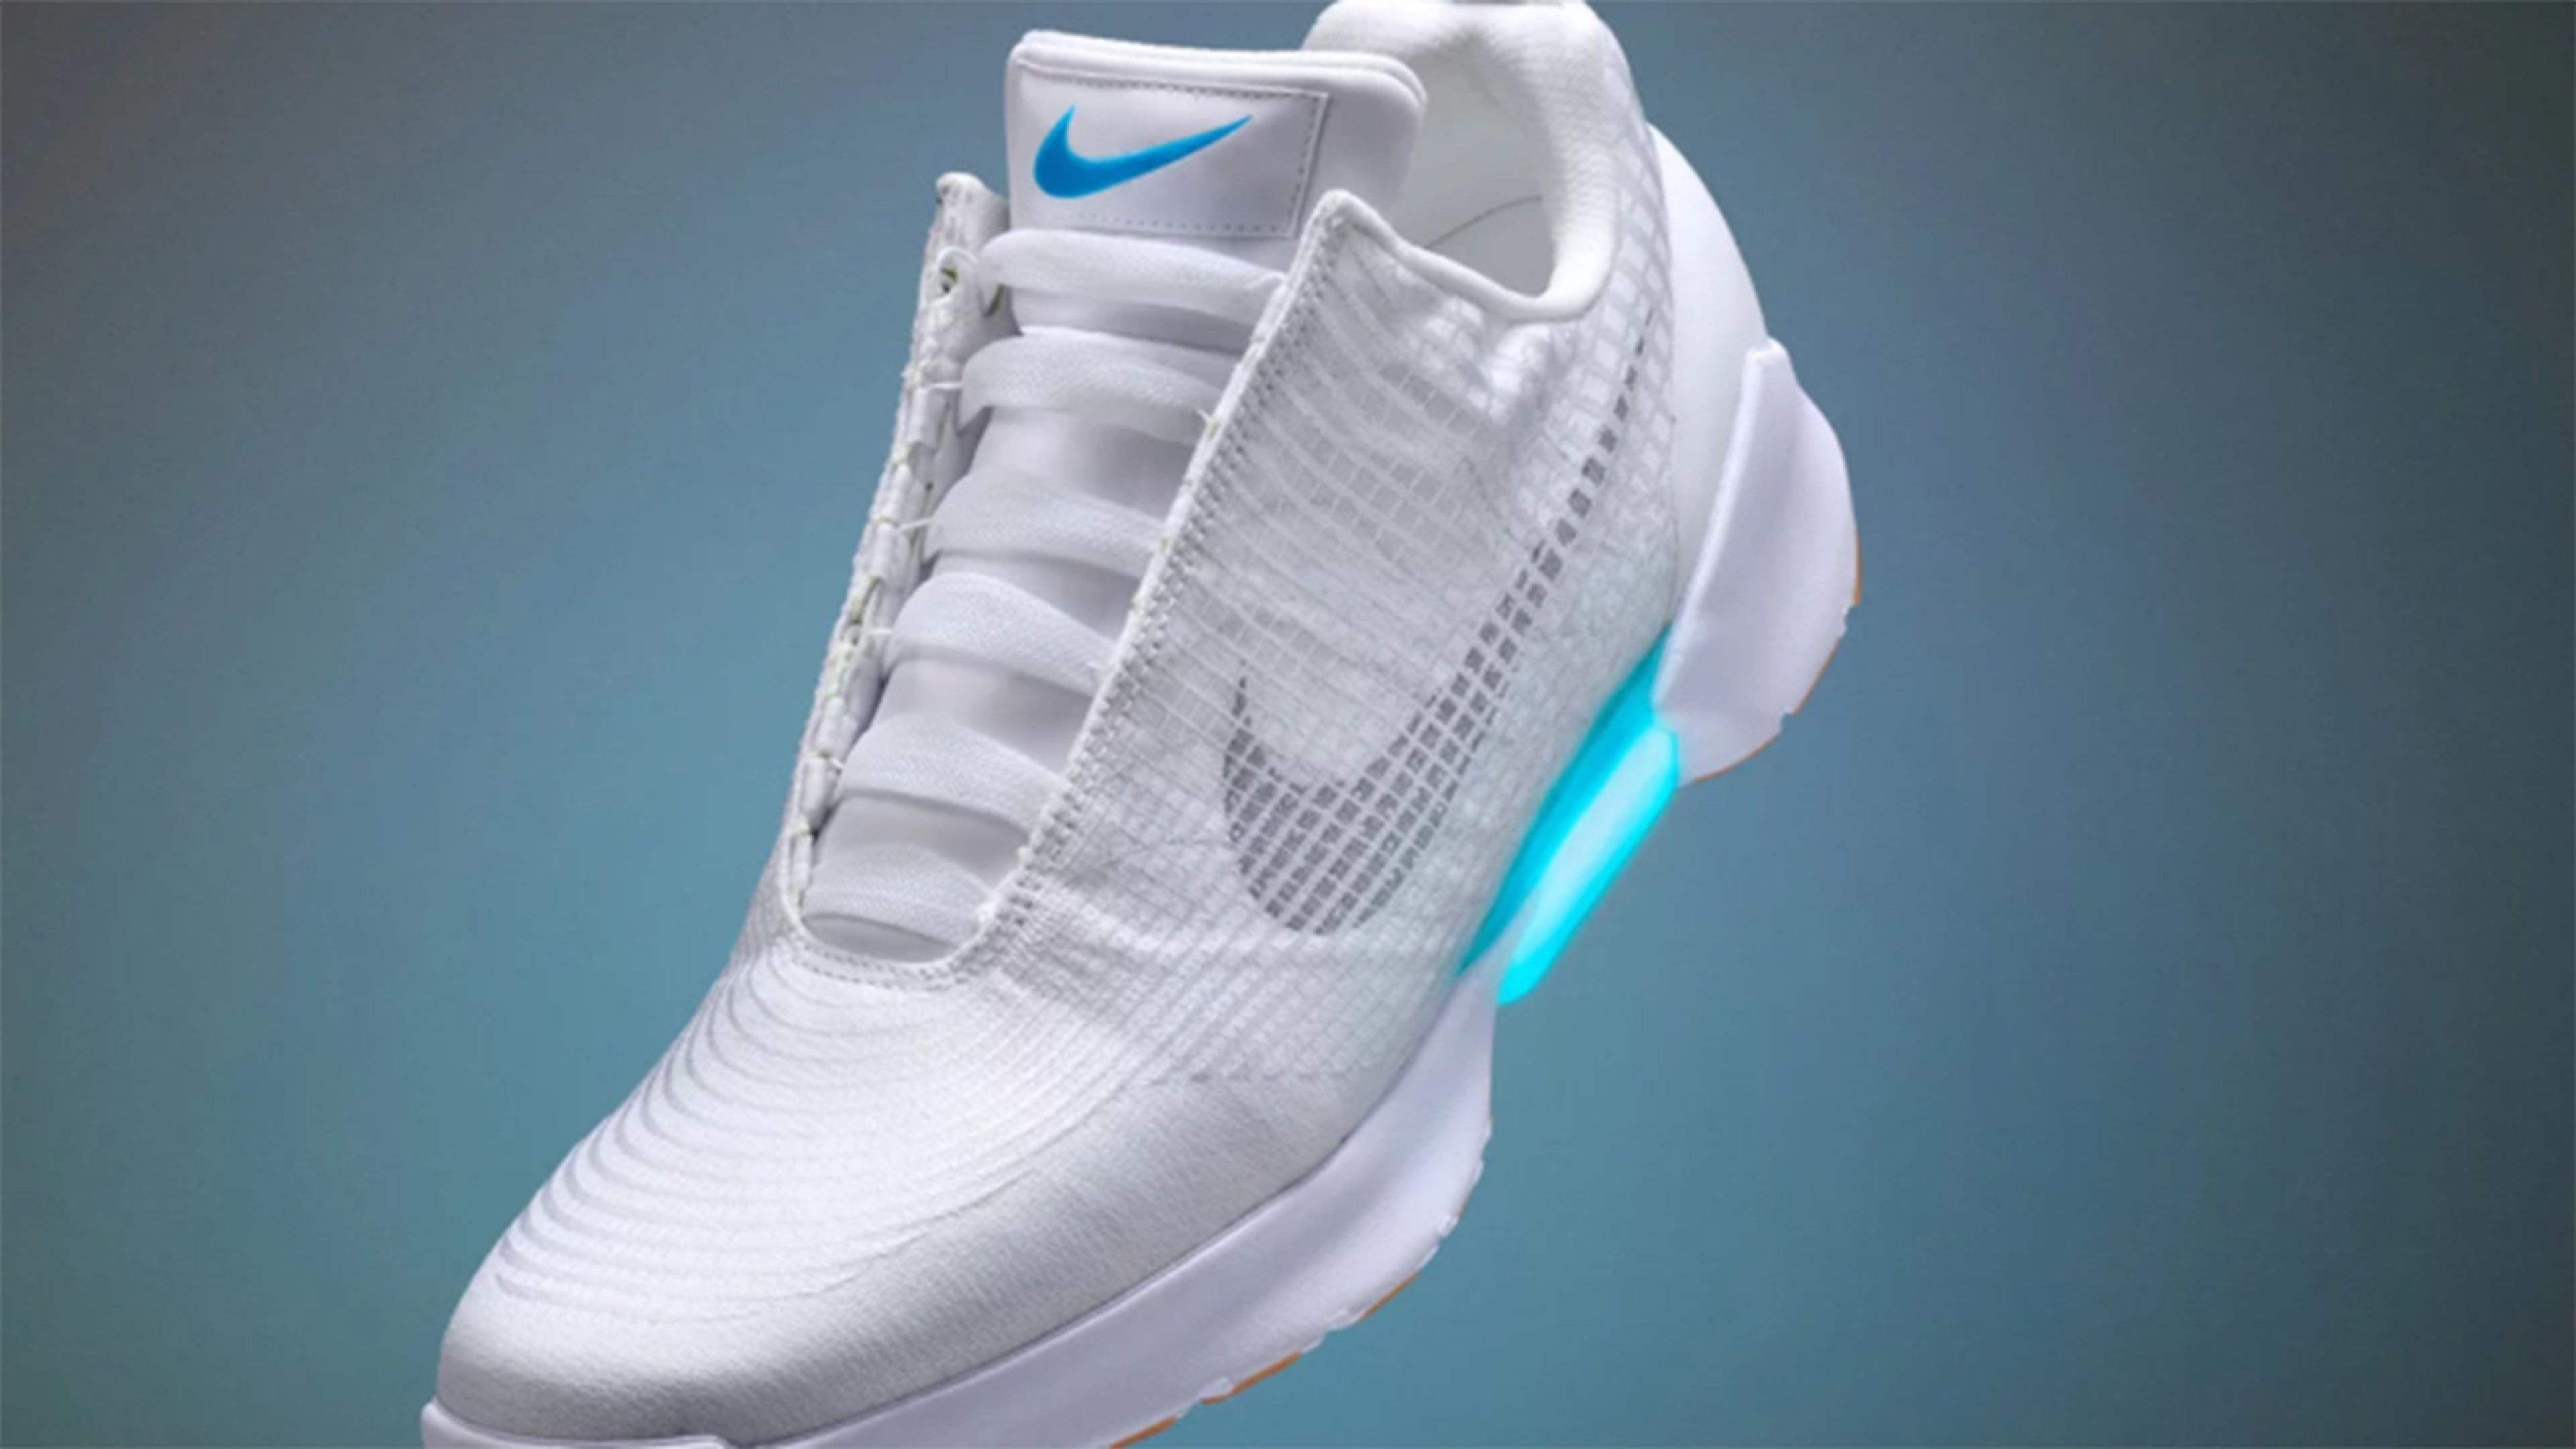 Nike lanzará un modelo más de zapatillas con robocordones en 2019 | Computer Hoy